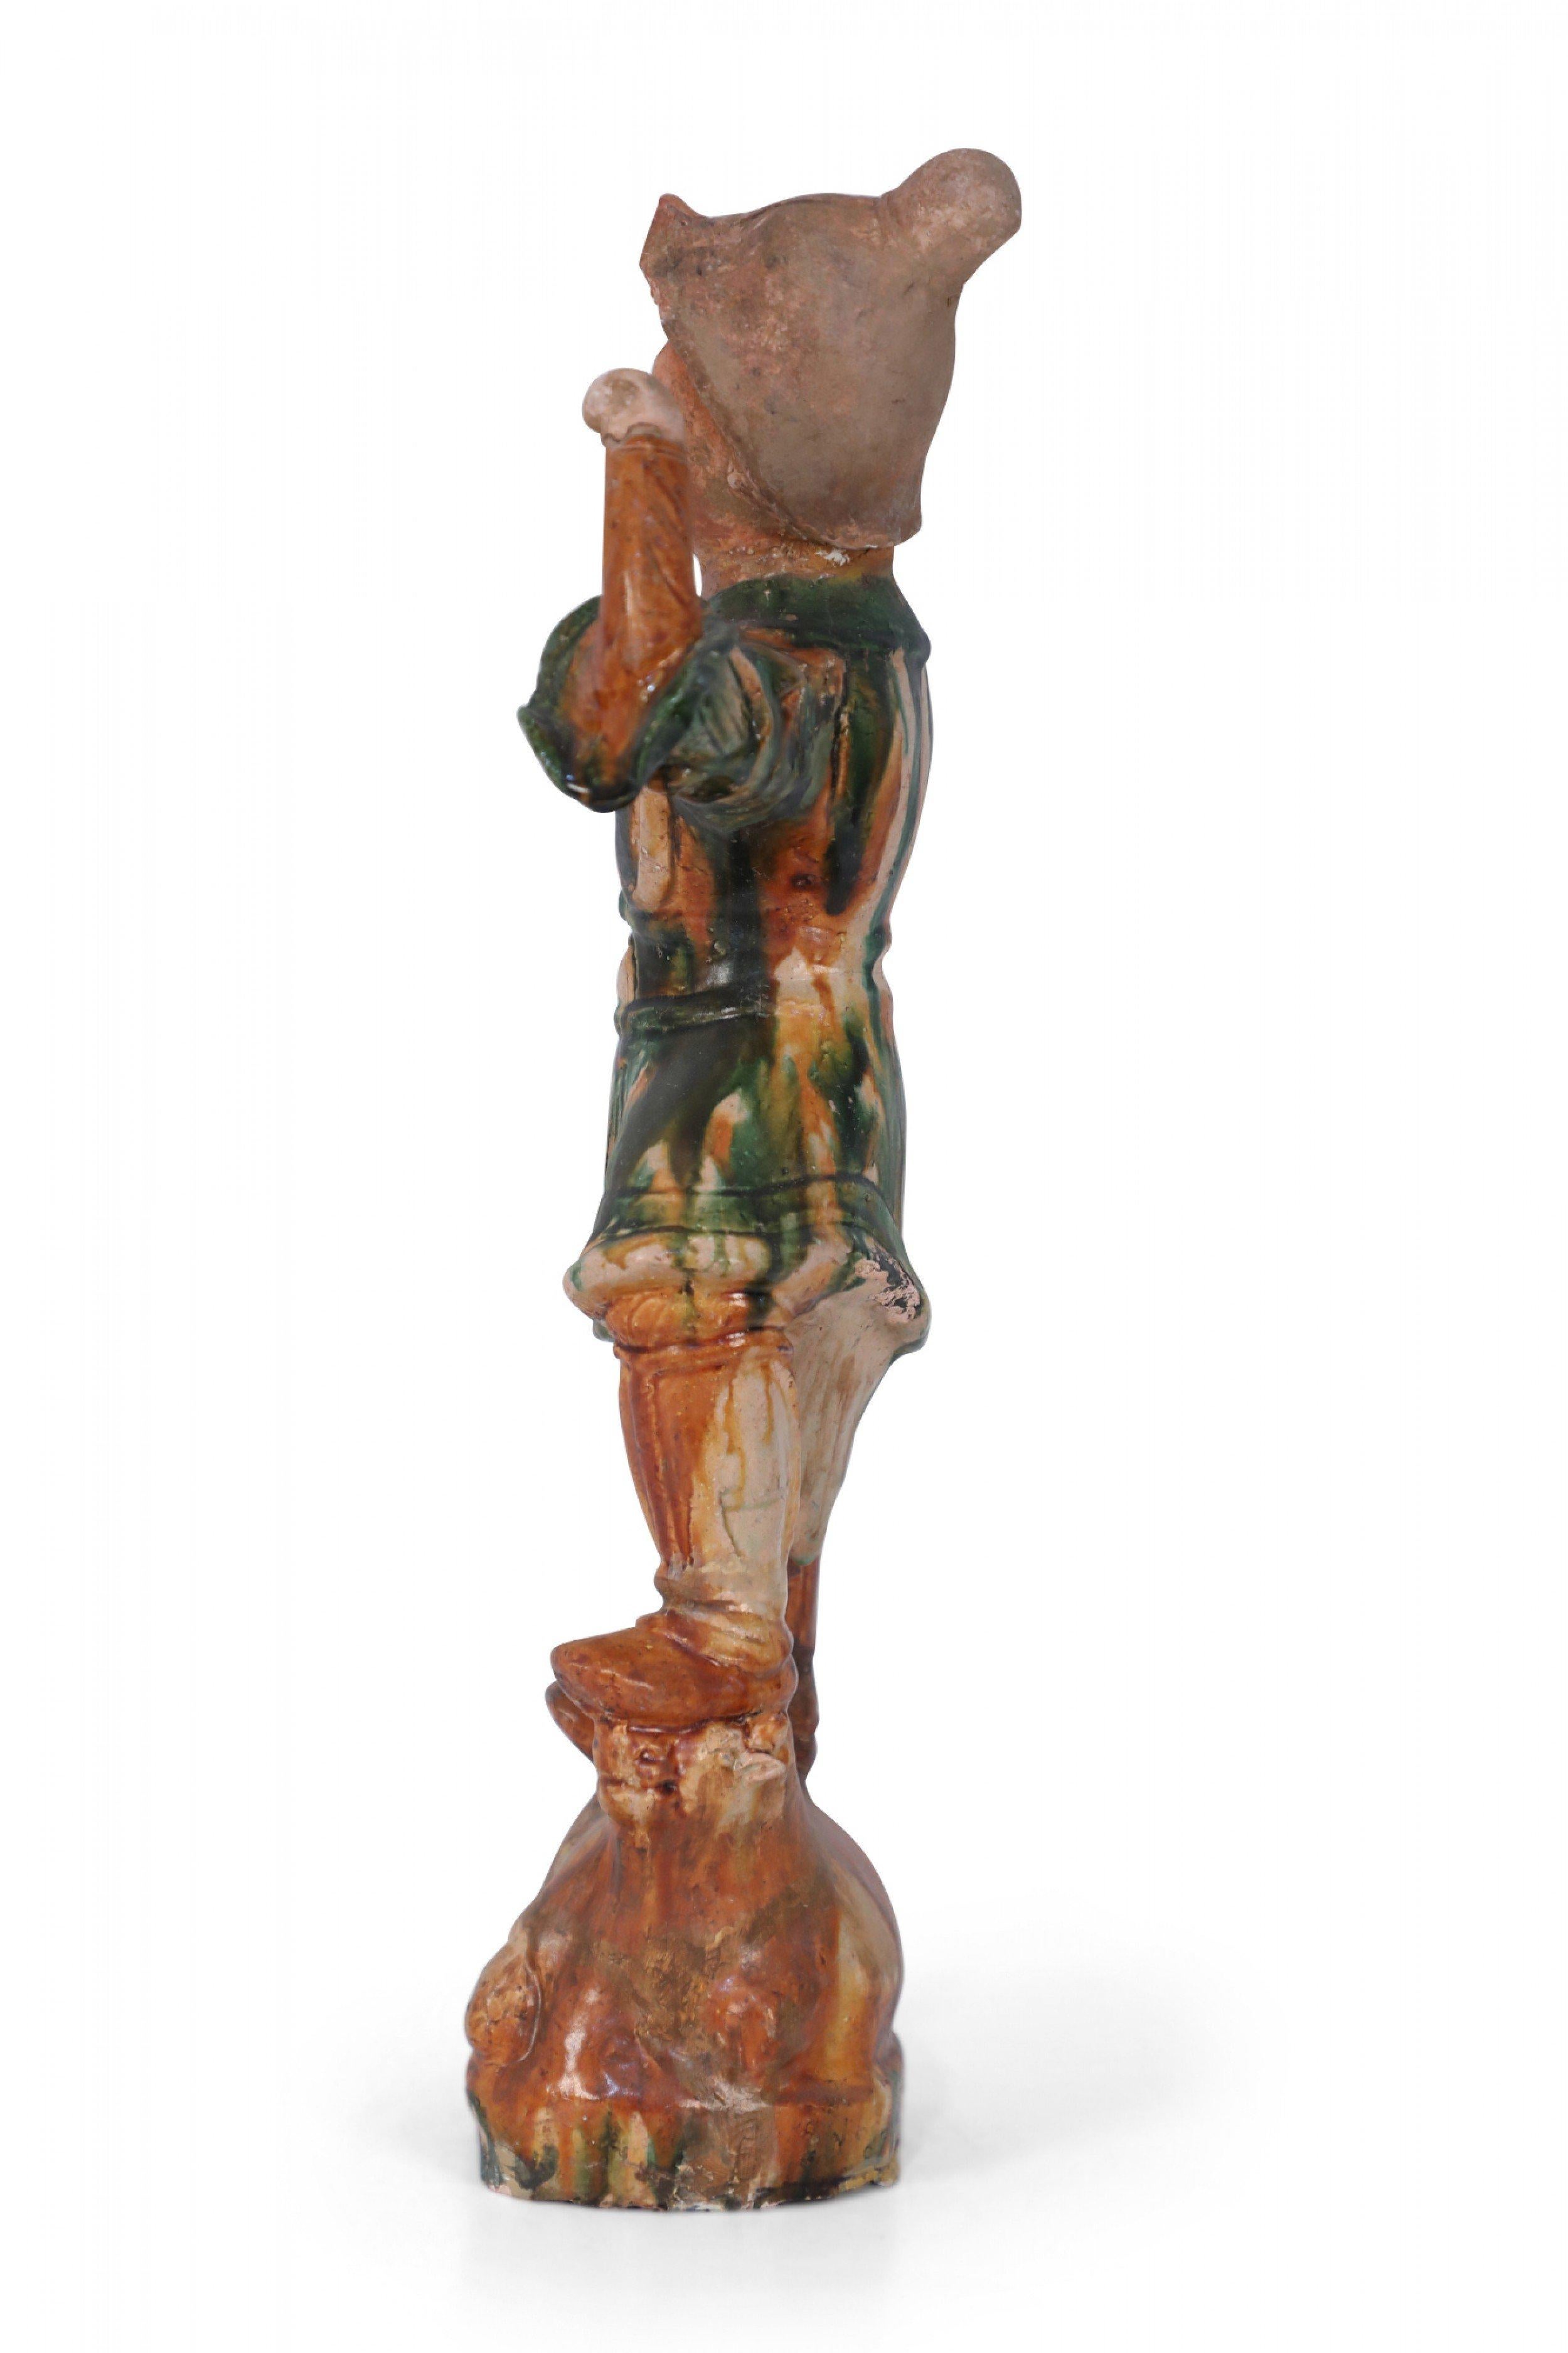 Antigua figura china de terracota, estilo Tang Dynasty, de un guardián sepulcral, en su típica postura de un pie más alto que el otro, apoyado sobre un animal -en este caso, una vaca- y con un brazo levantado, realizada con el tradicional vidriado